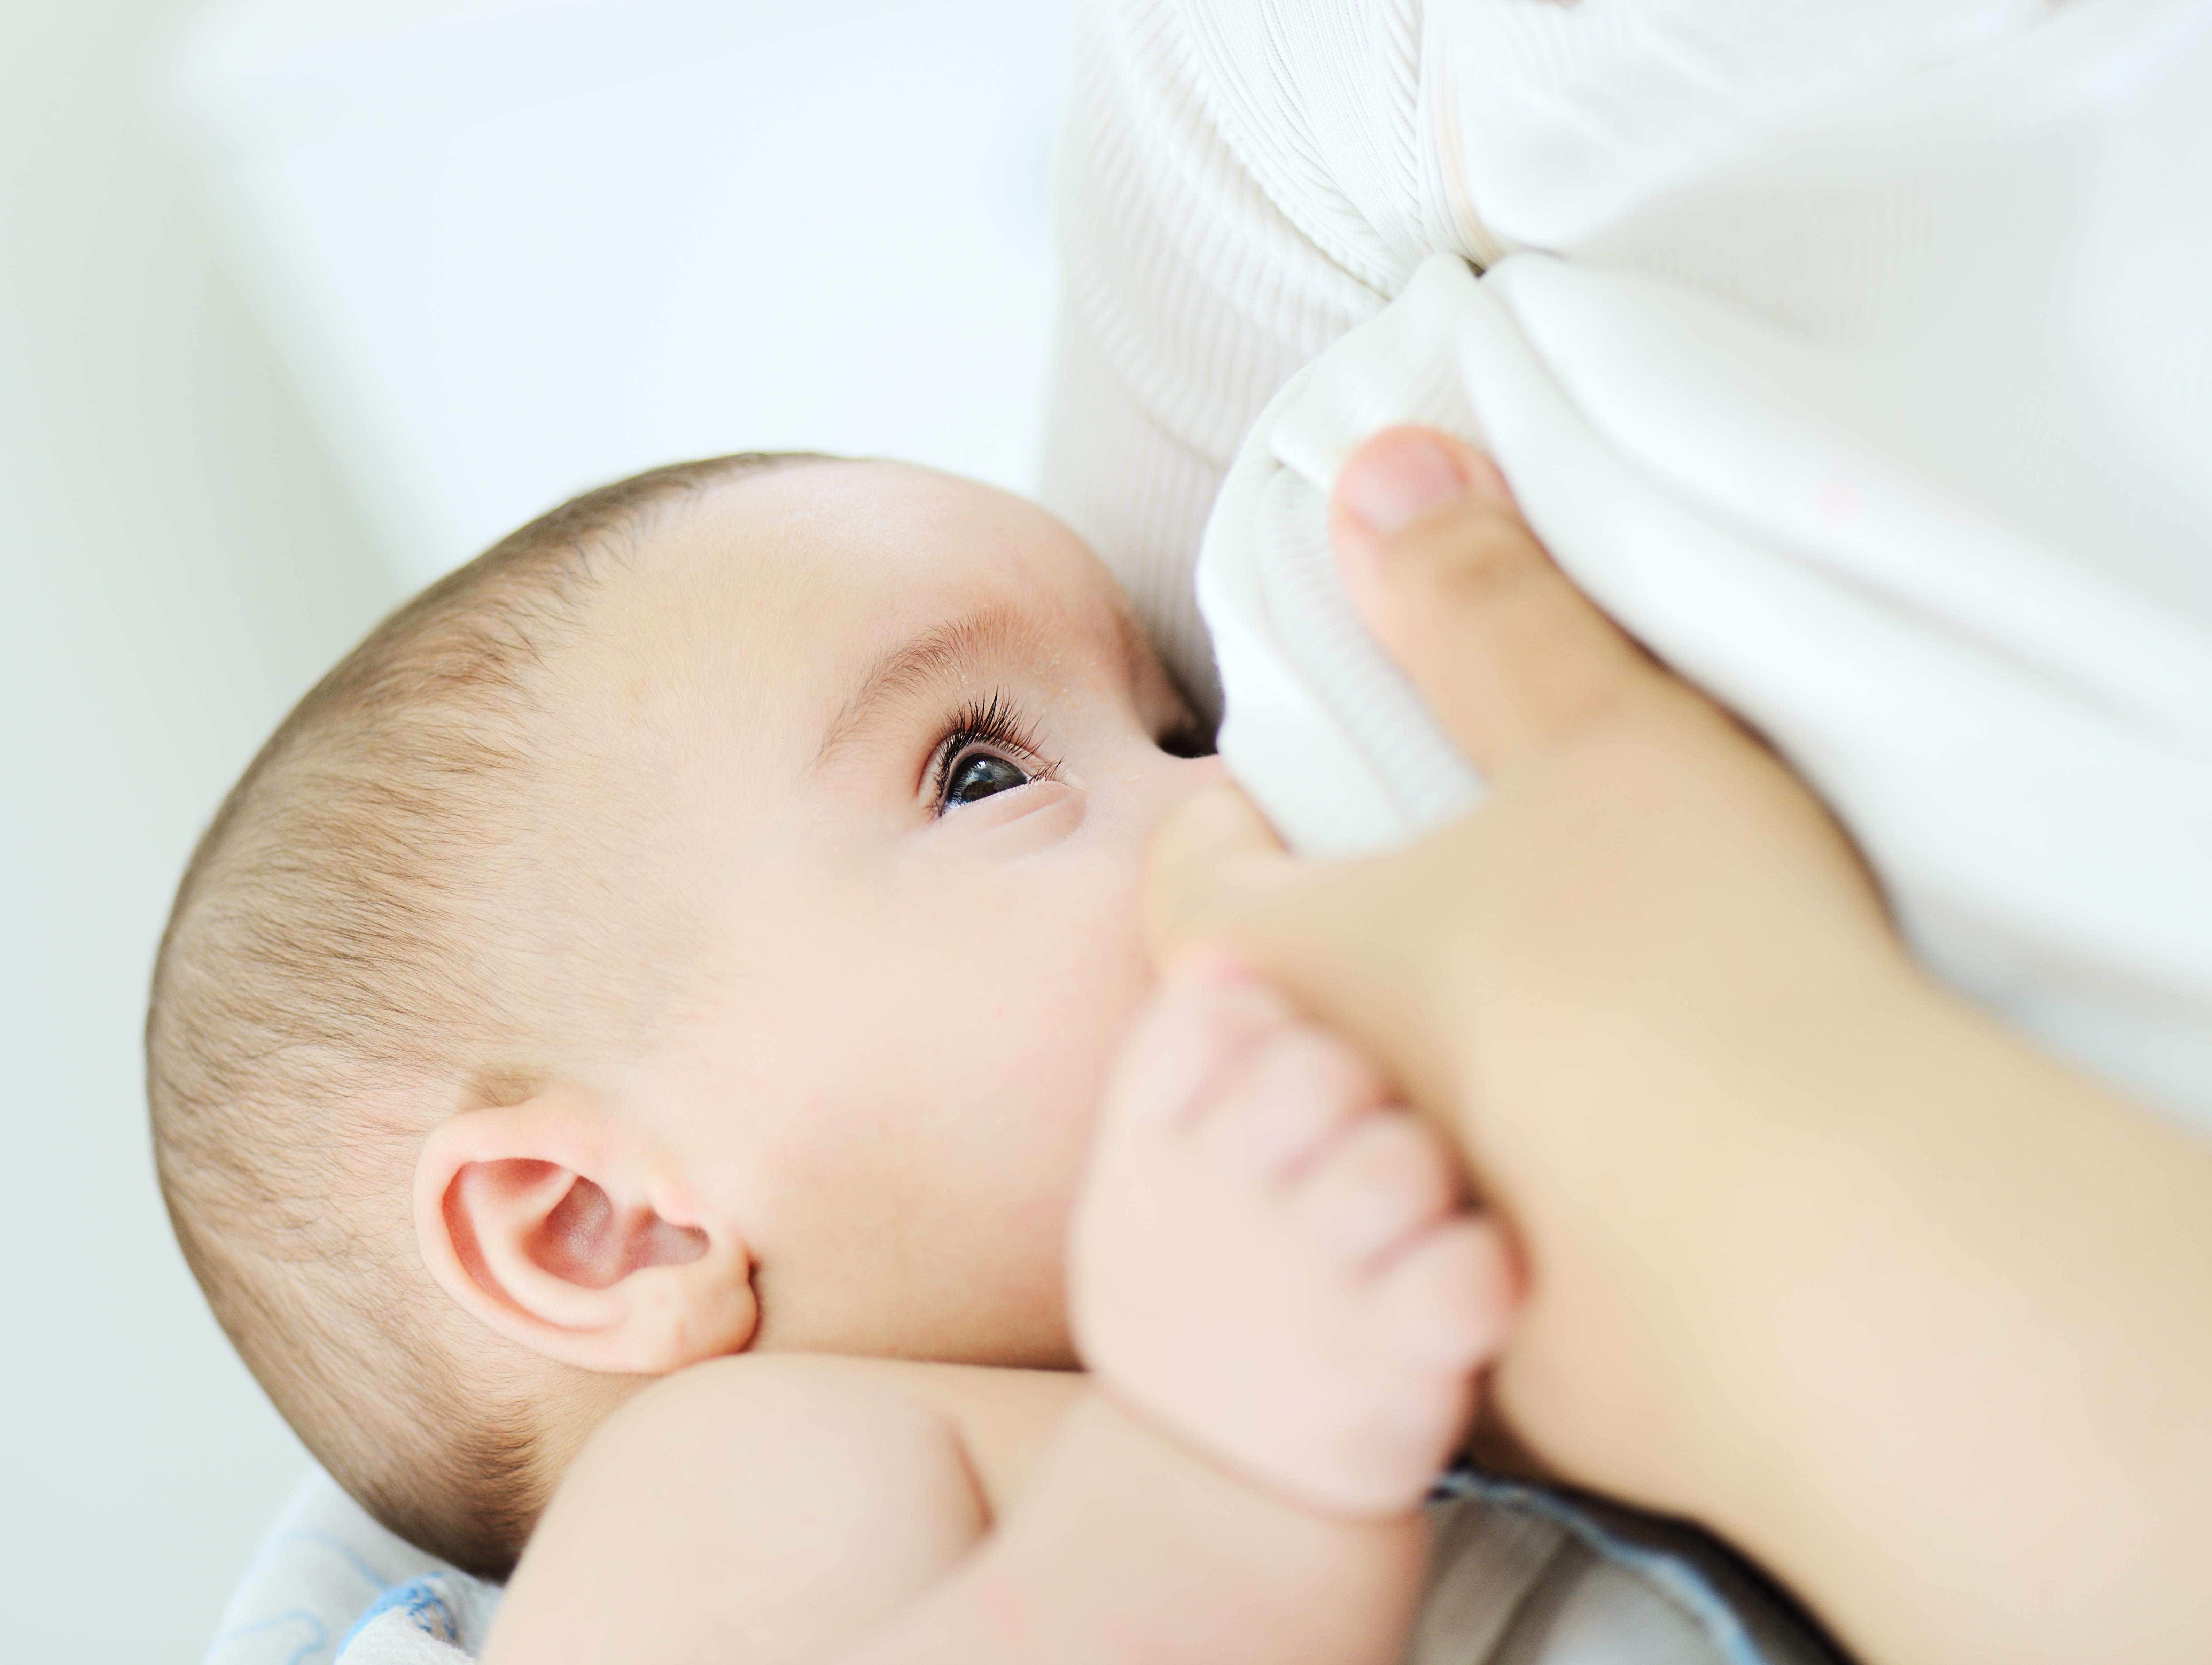 Aunque la lactancia materna es un proceso natural, no siempre es fácil